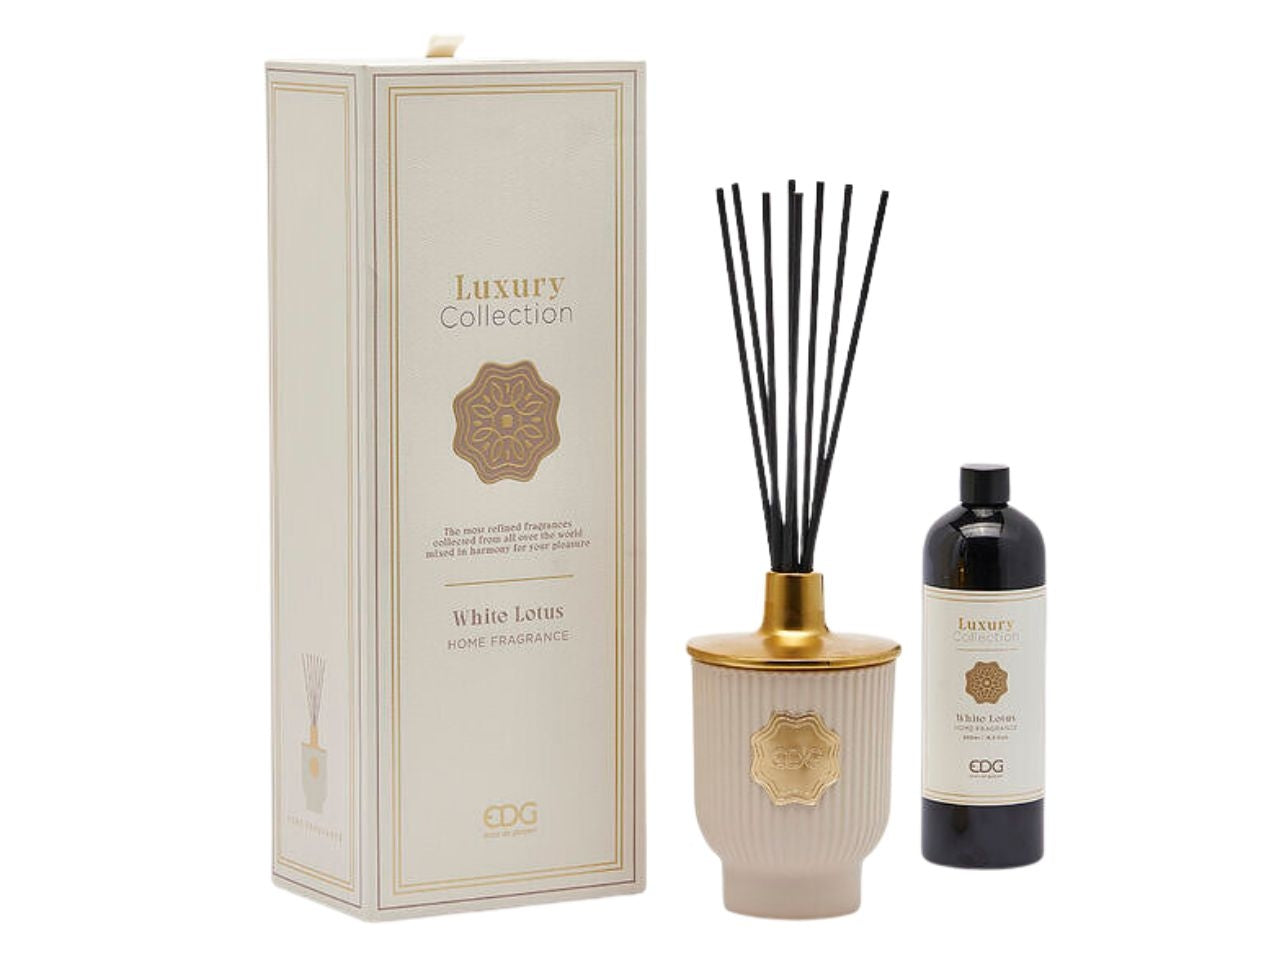 Diffusore di profumo Luxury, al profumo di White Lotus in vetro color beige, con scatola regalo 500ml - EDG